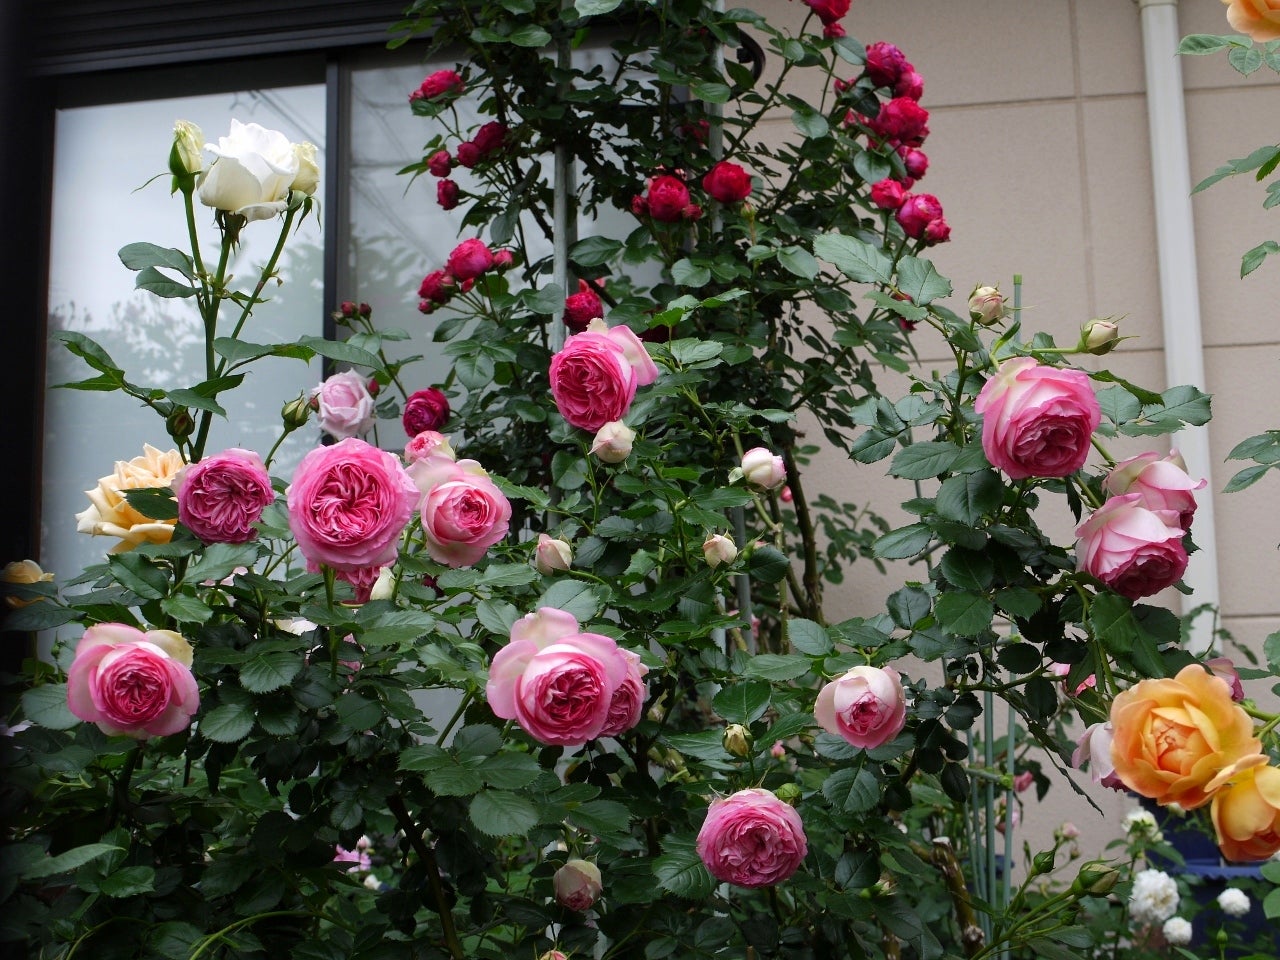 ロゼ ピエール ドゥ ロンサール バラの初開花4品種 99 102番目 私のバラに逢いたくて